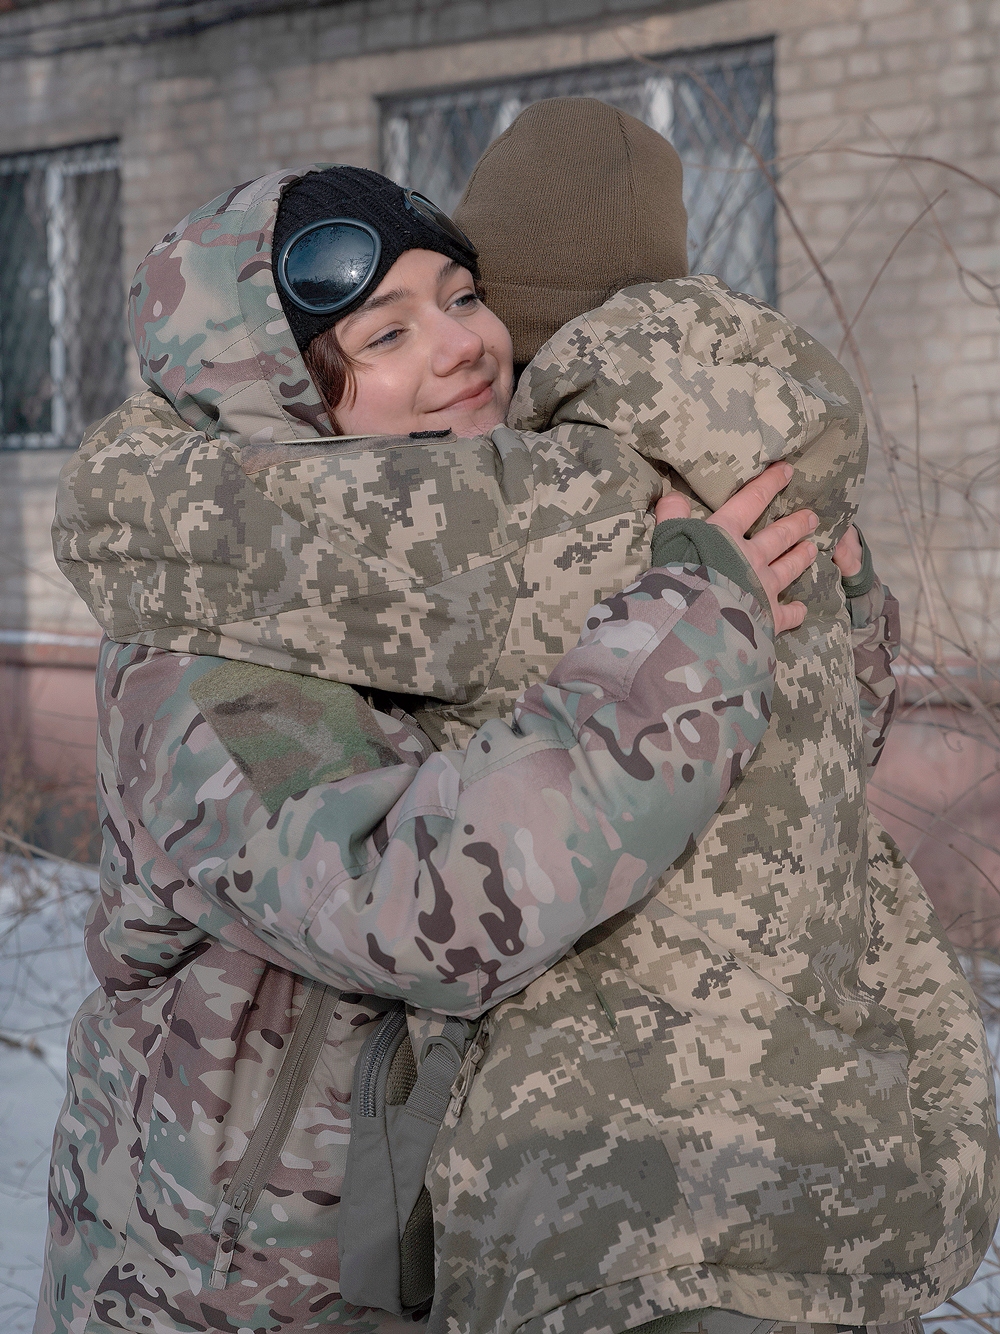 Reportage: Les Ukrainiennes au secours d’une armée embourbée